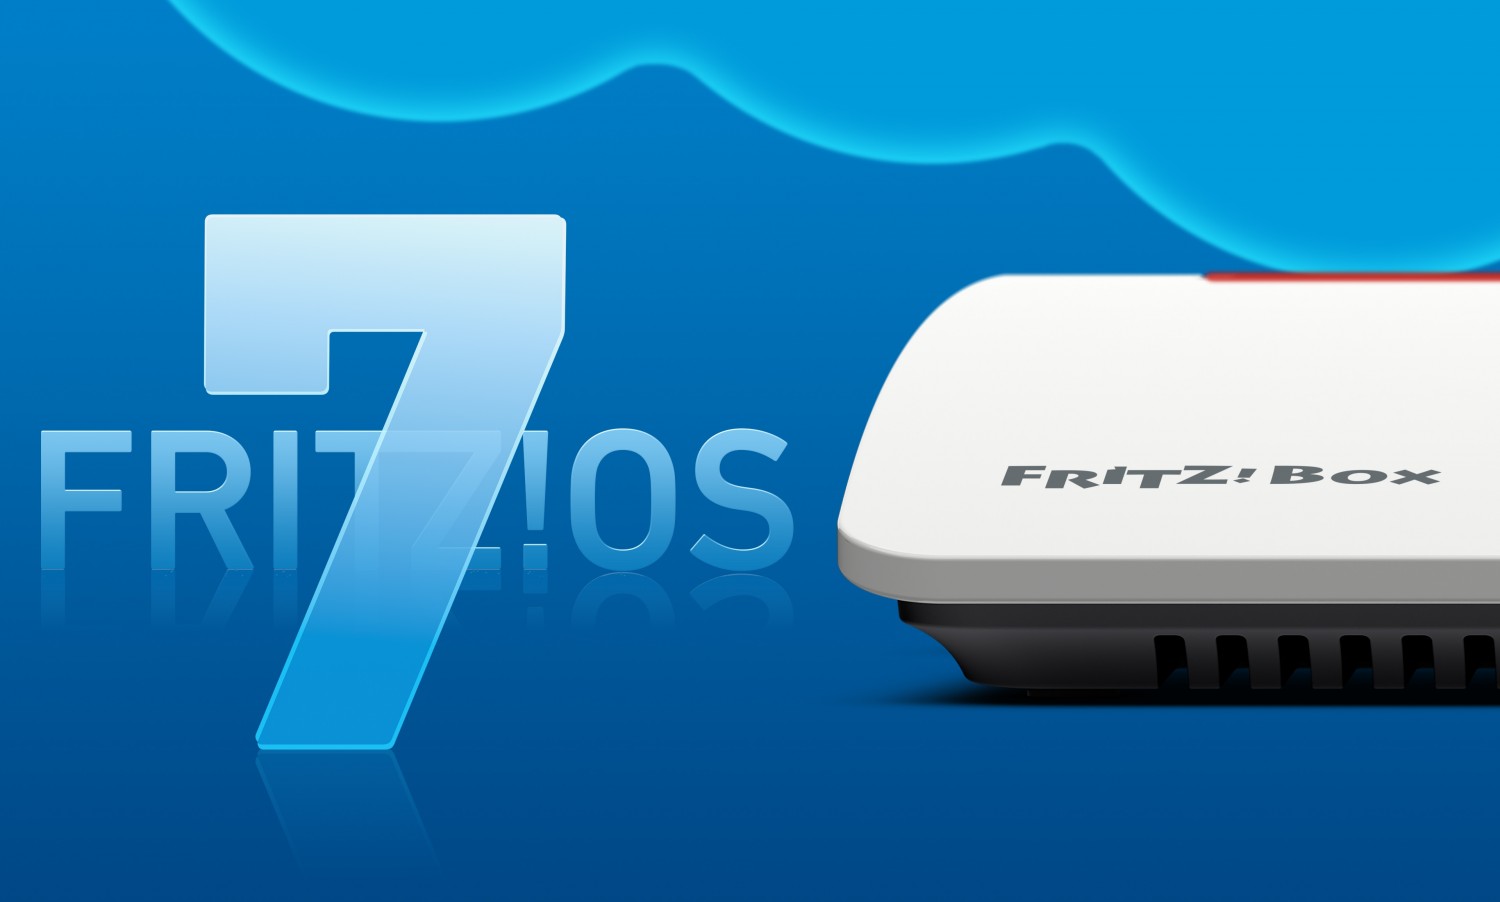 Smart Home FRITZ!OS 7 kommt im Juli - Neuheiten in den Bereichen WLAN, Mesh und Smart Home - News, Bild 1